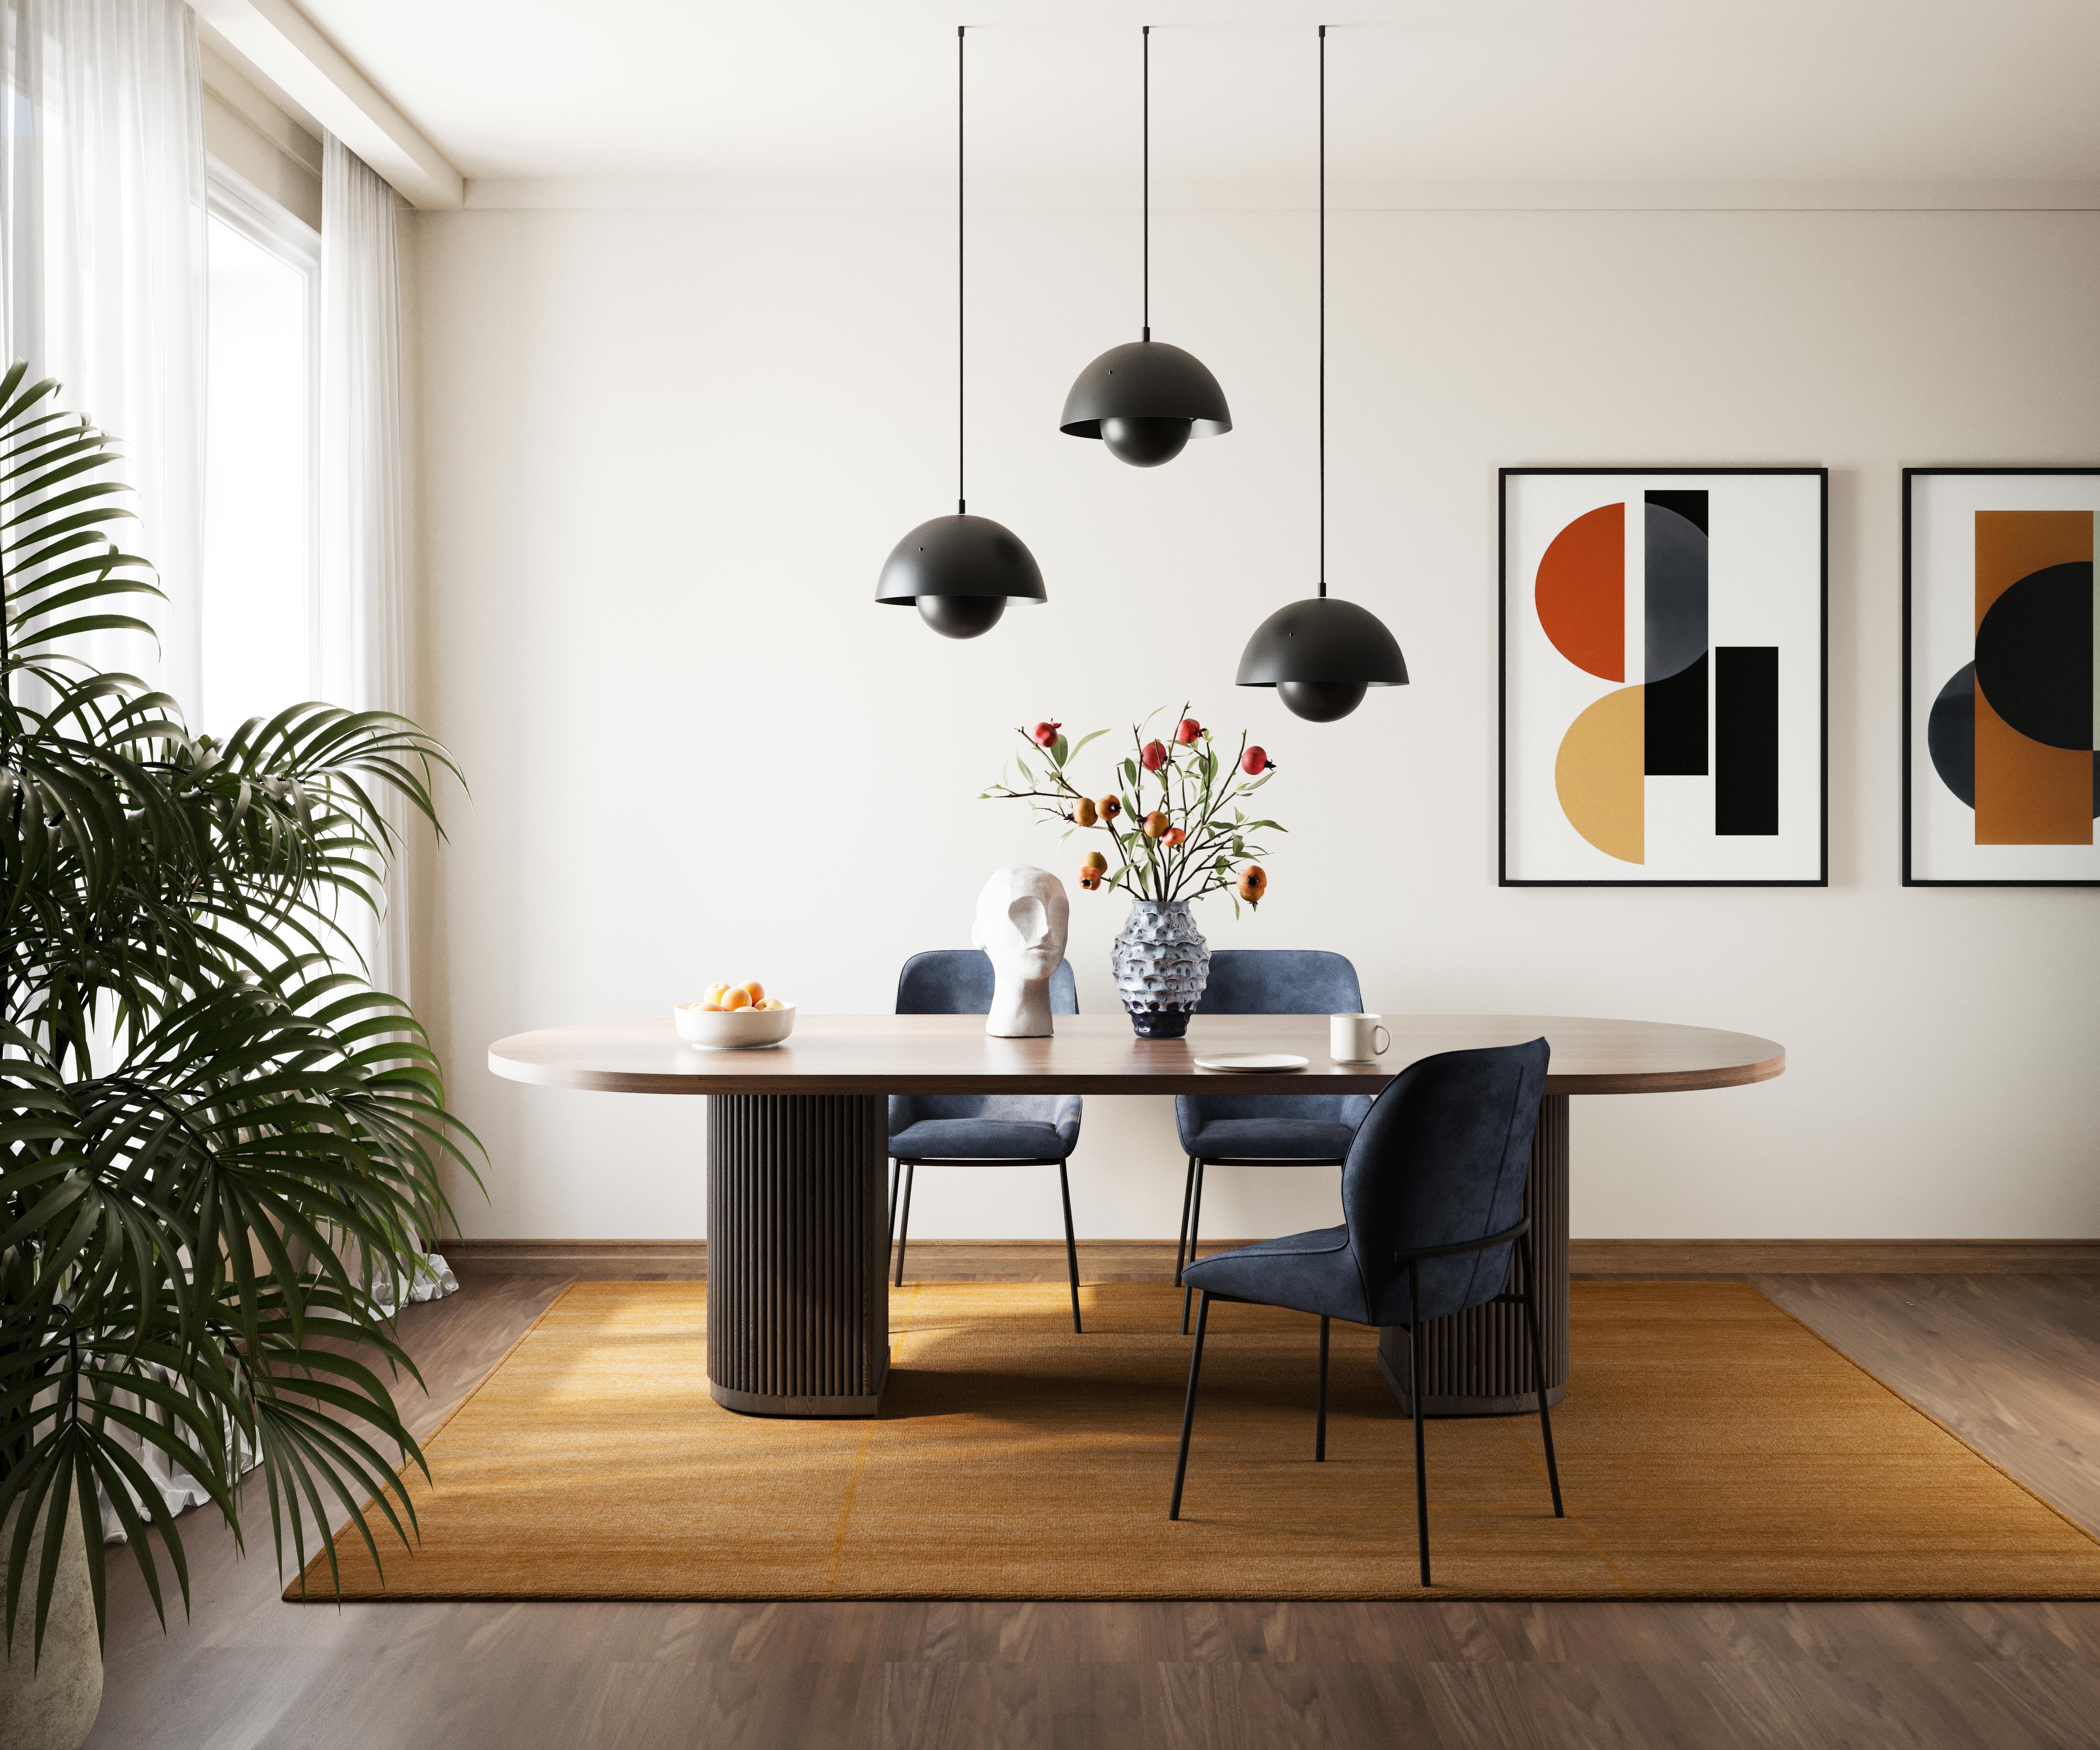 La table à manger Radius est un meuble qui donnera le ton du style à votre maison. Depuis des générations, le bois massif est considéré comme un matériau de construction durable et prestigieux. La base à tambour de la table est un élément de design